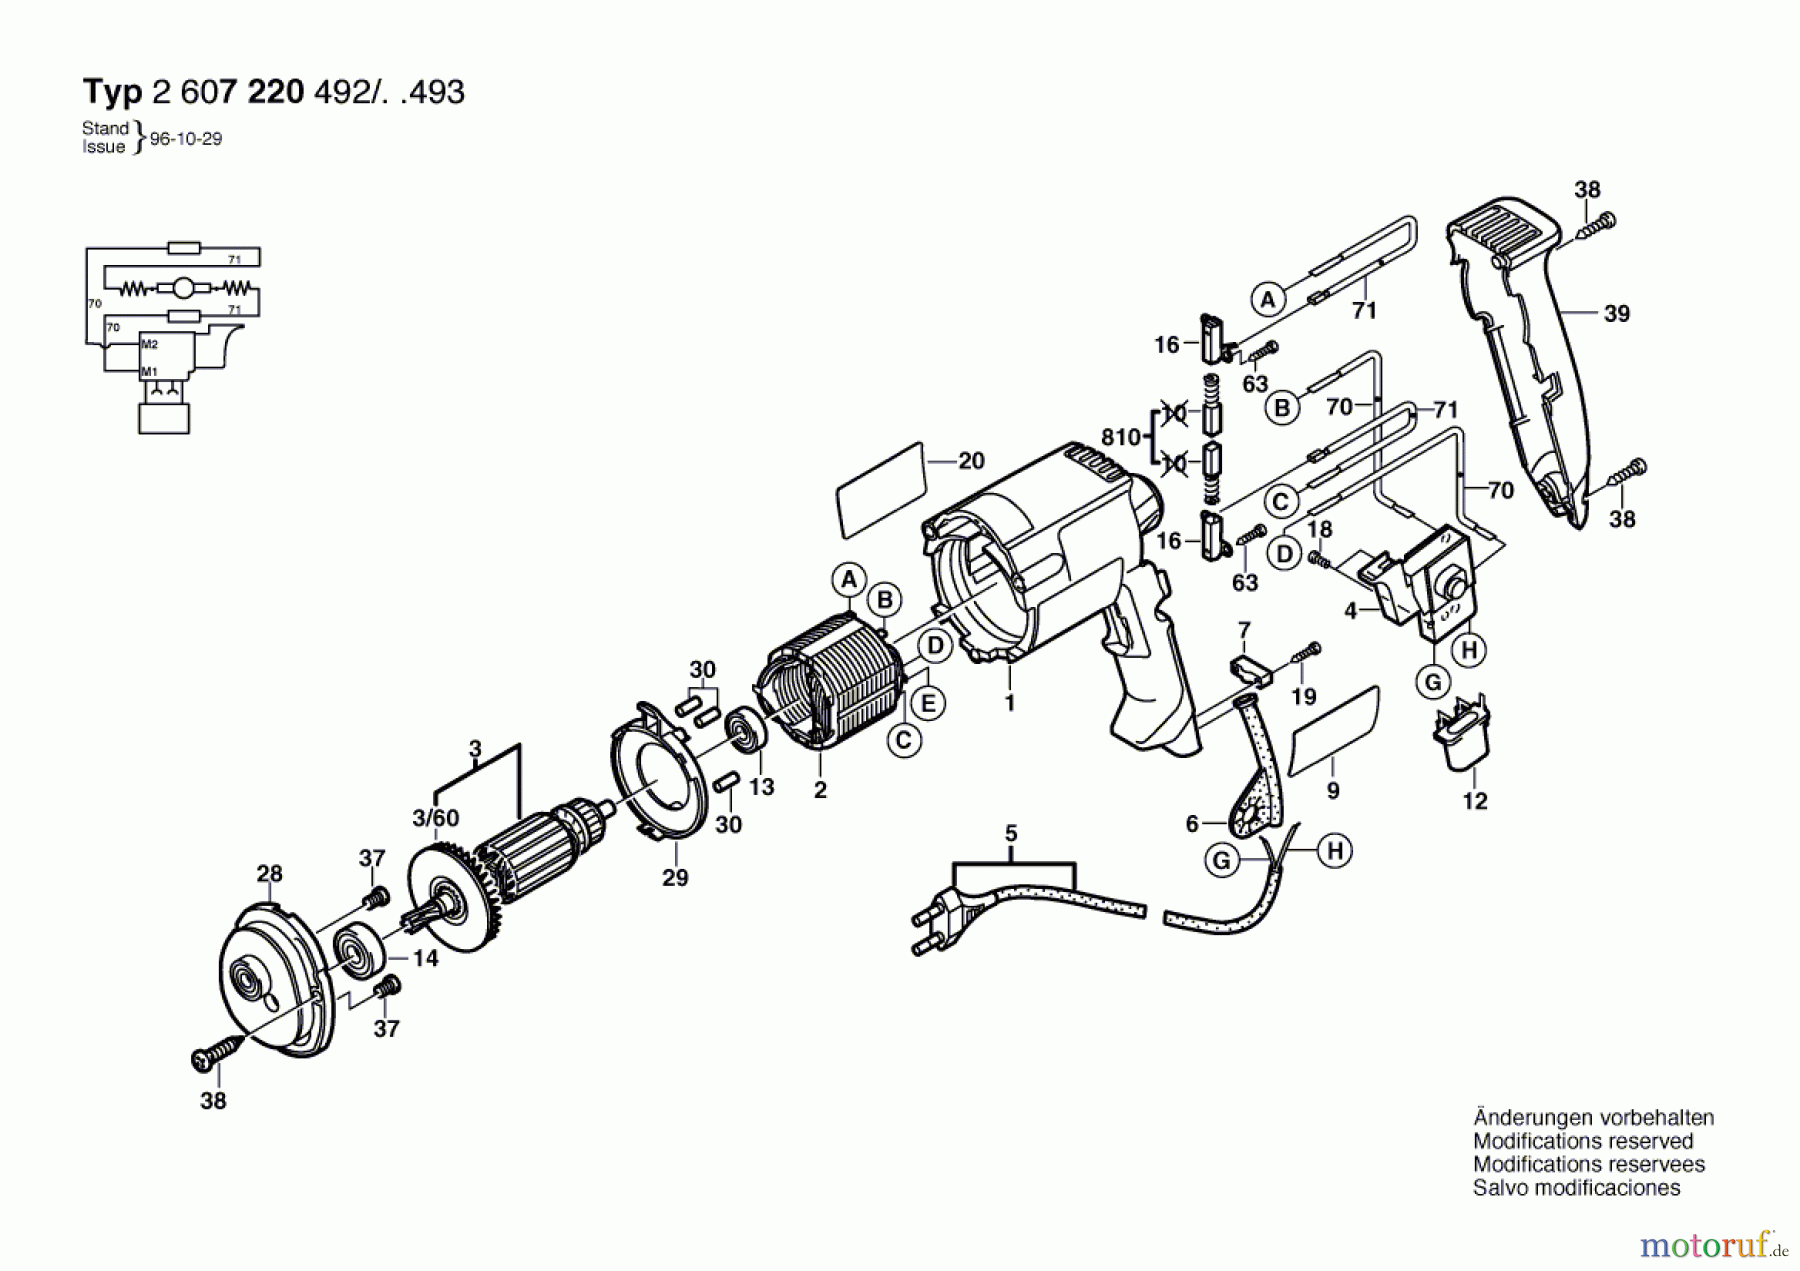  Bosch Werkzeug Anbaumotor ---- Seite 1